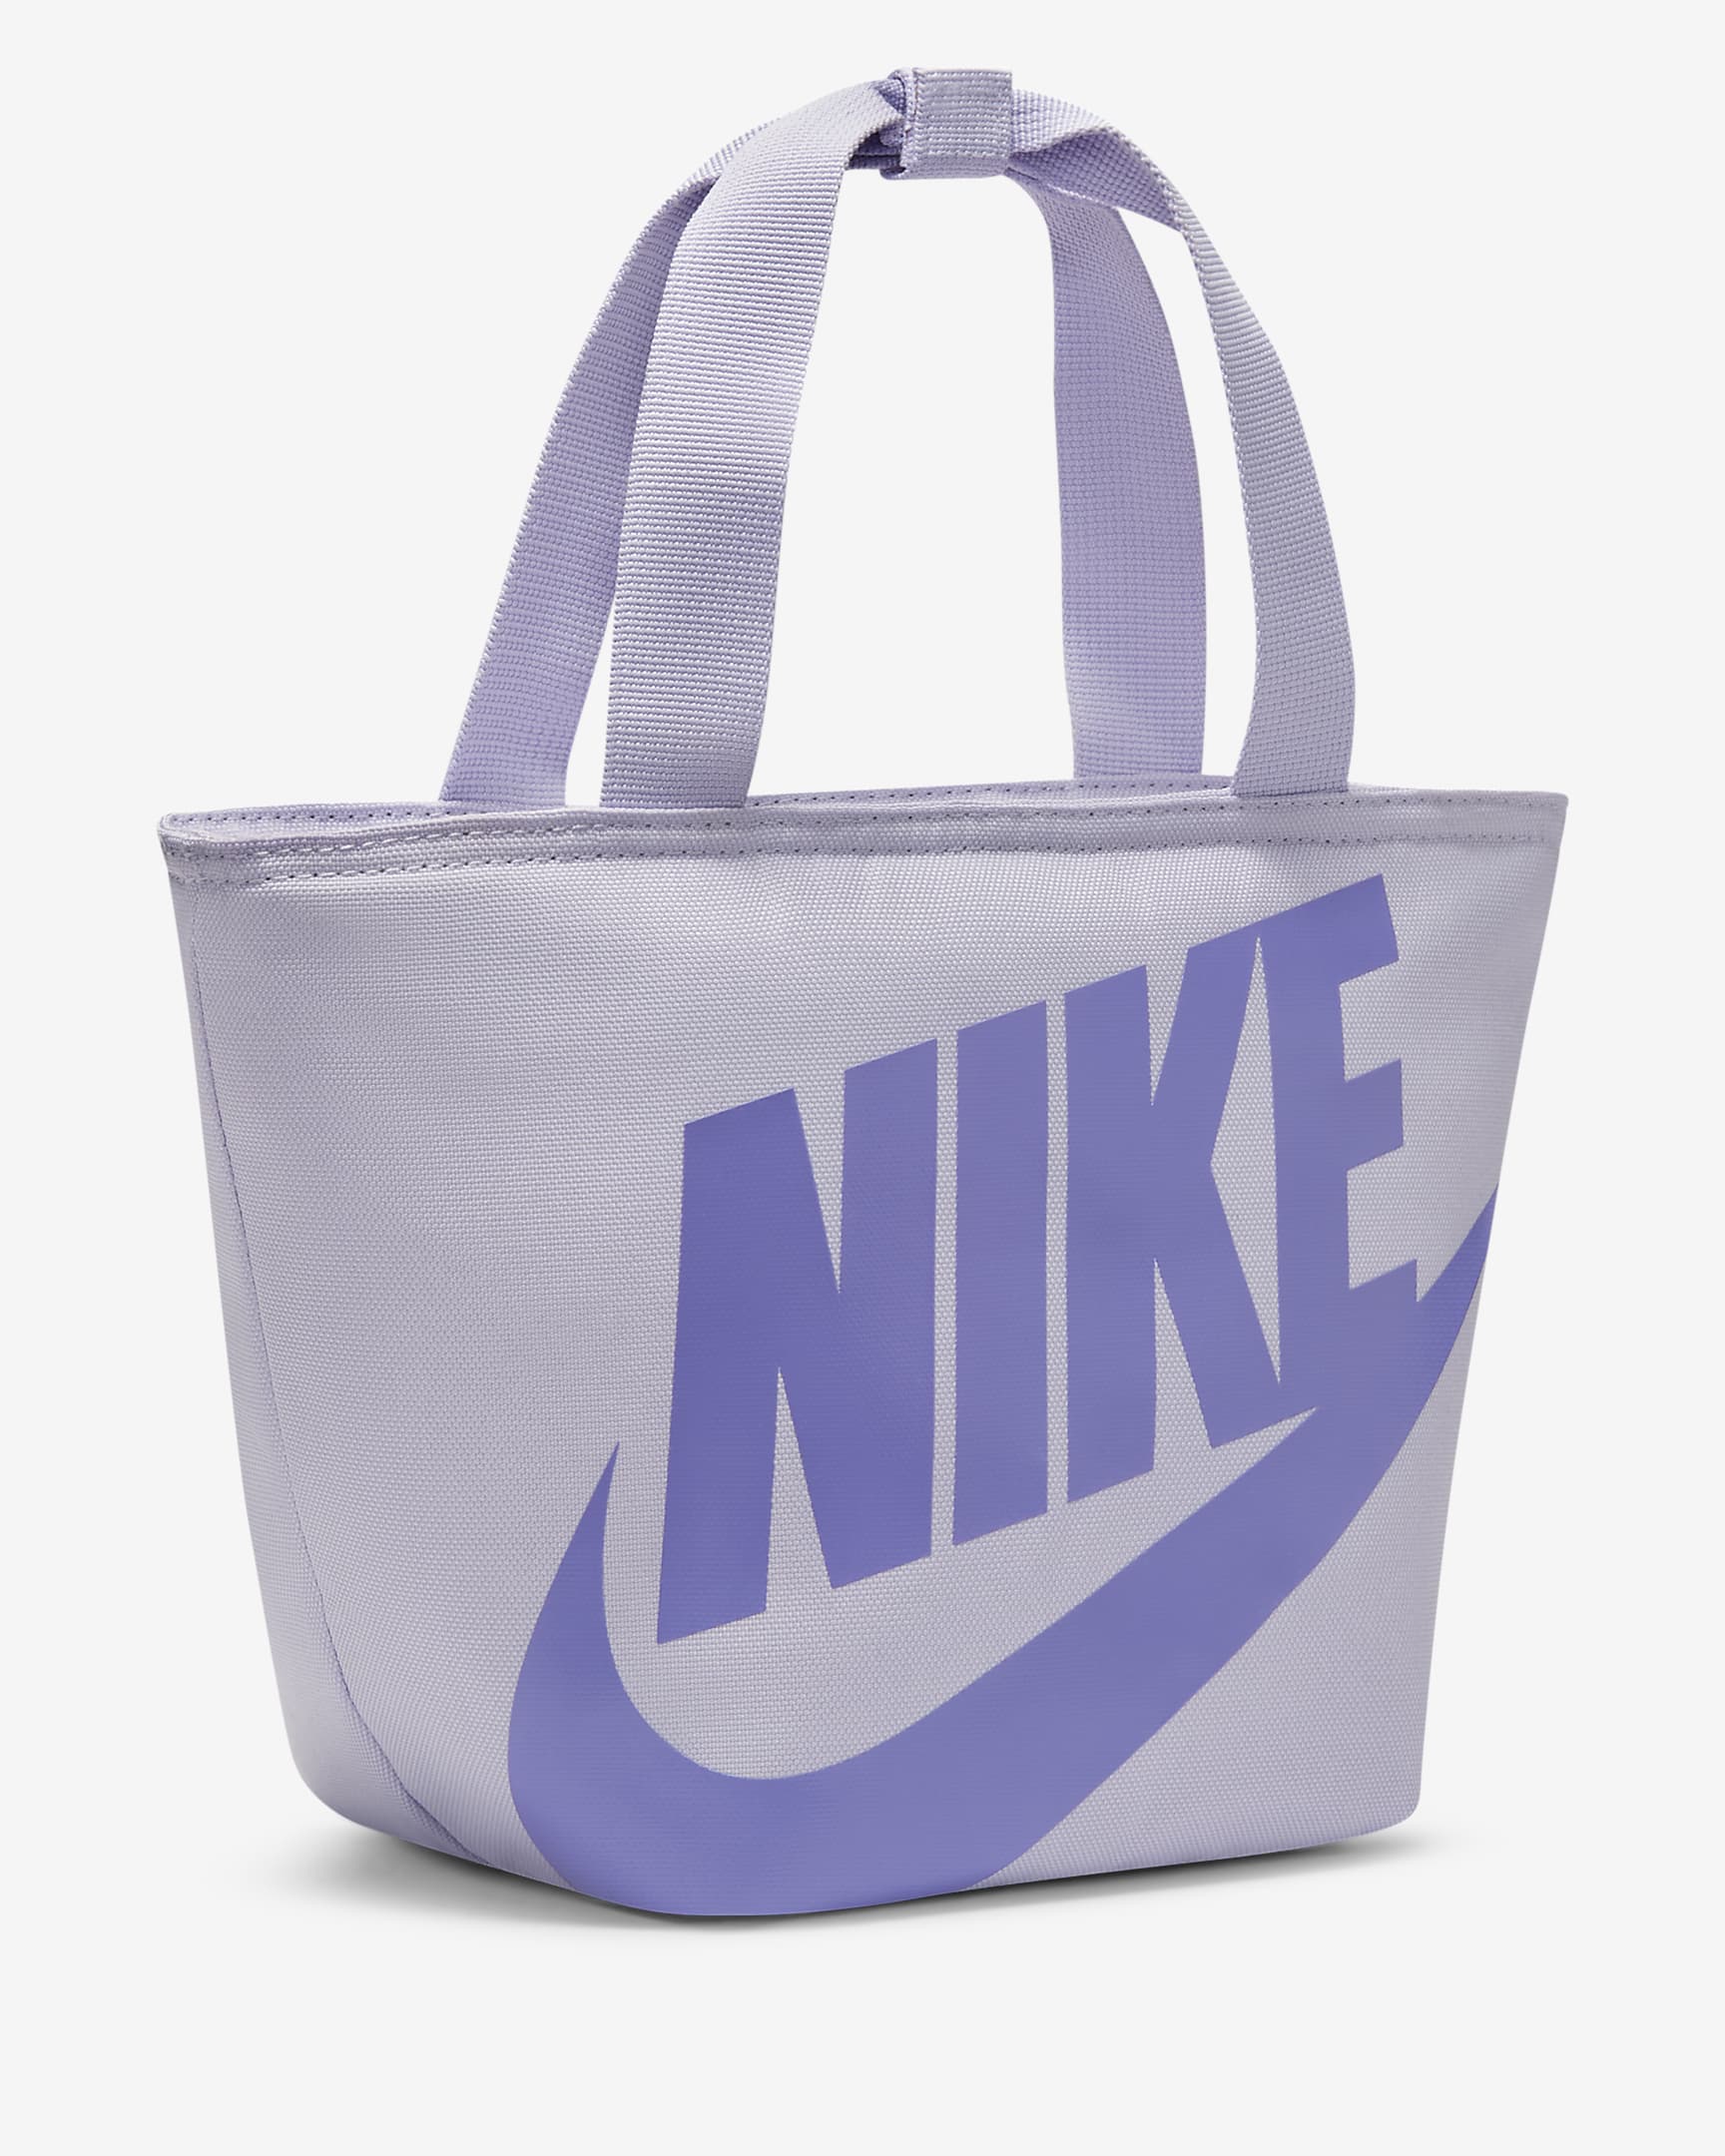 Nike Fuel Pack Kids' Lunch Bag - Lavender Mist